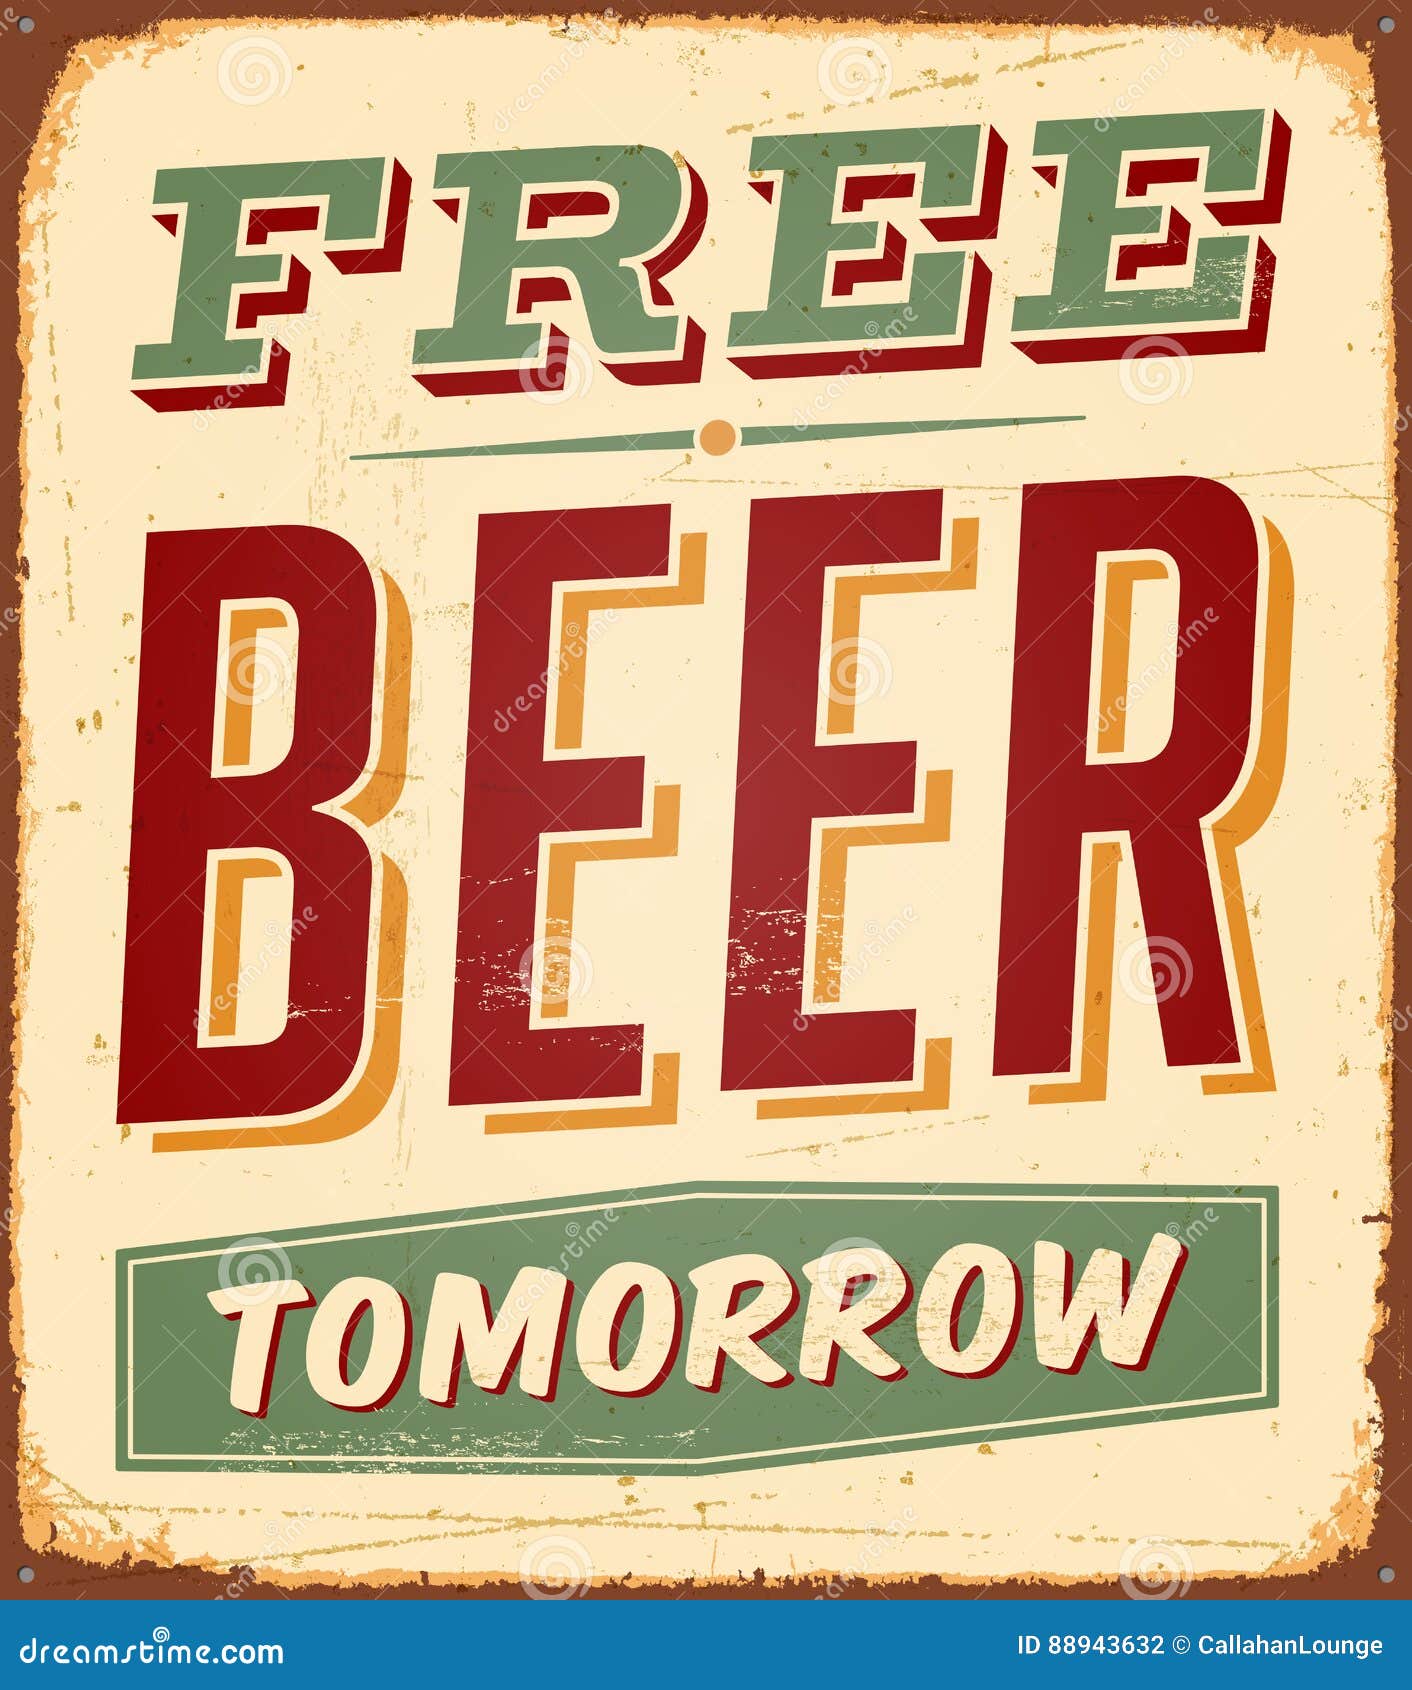 vintage rusty free beer tomorrow metal sign.